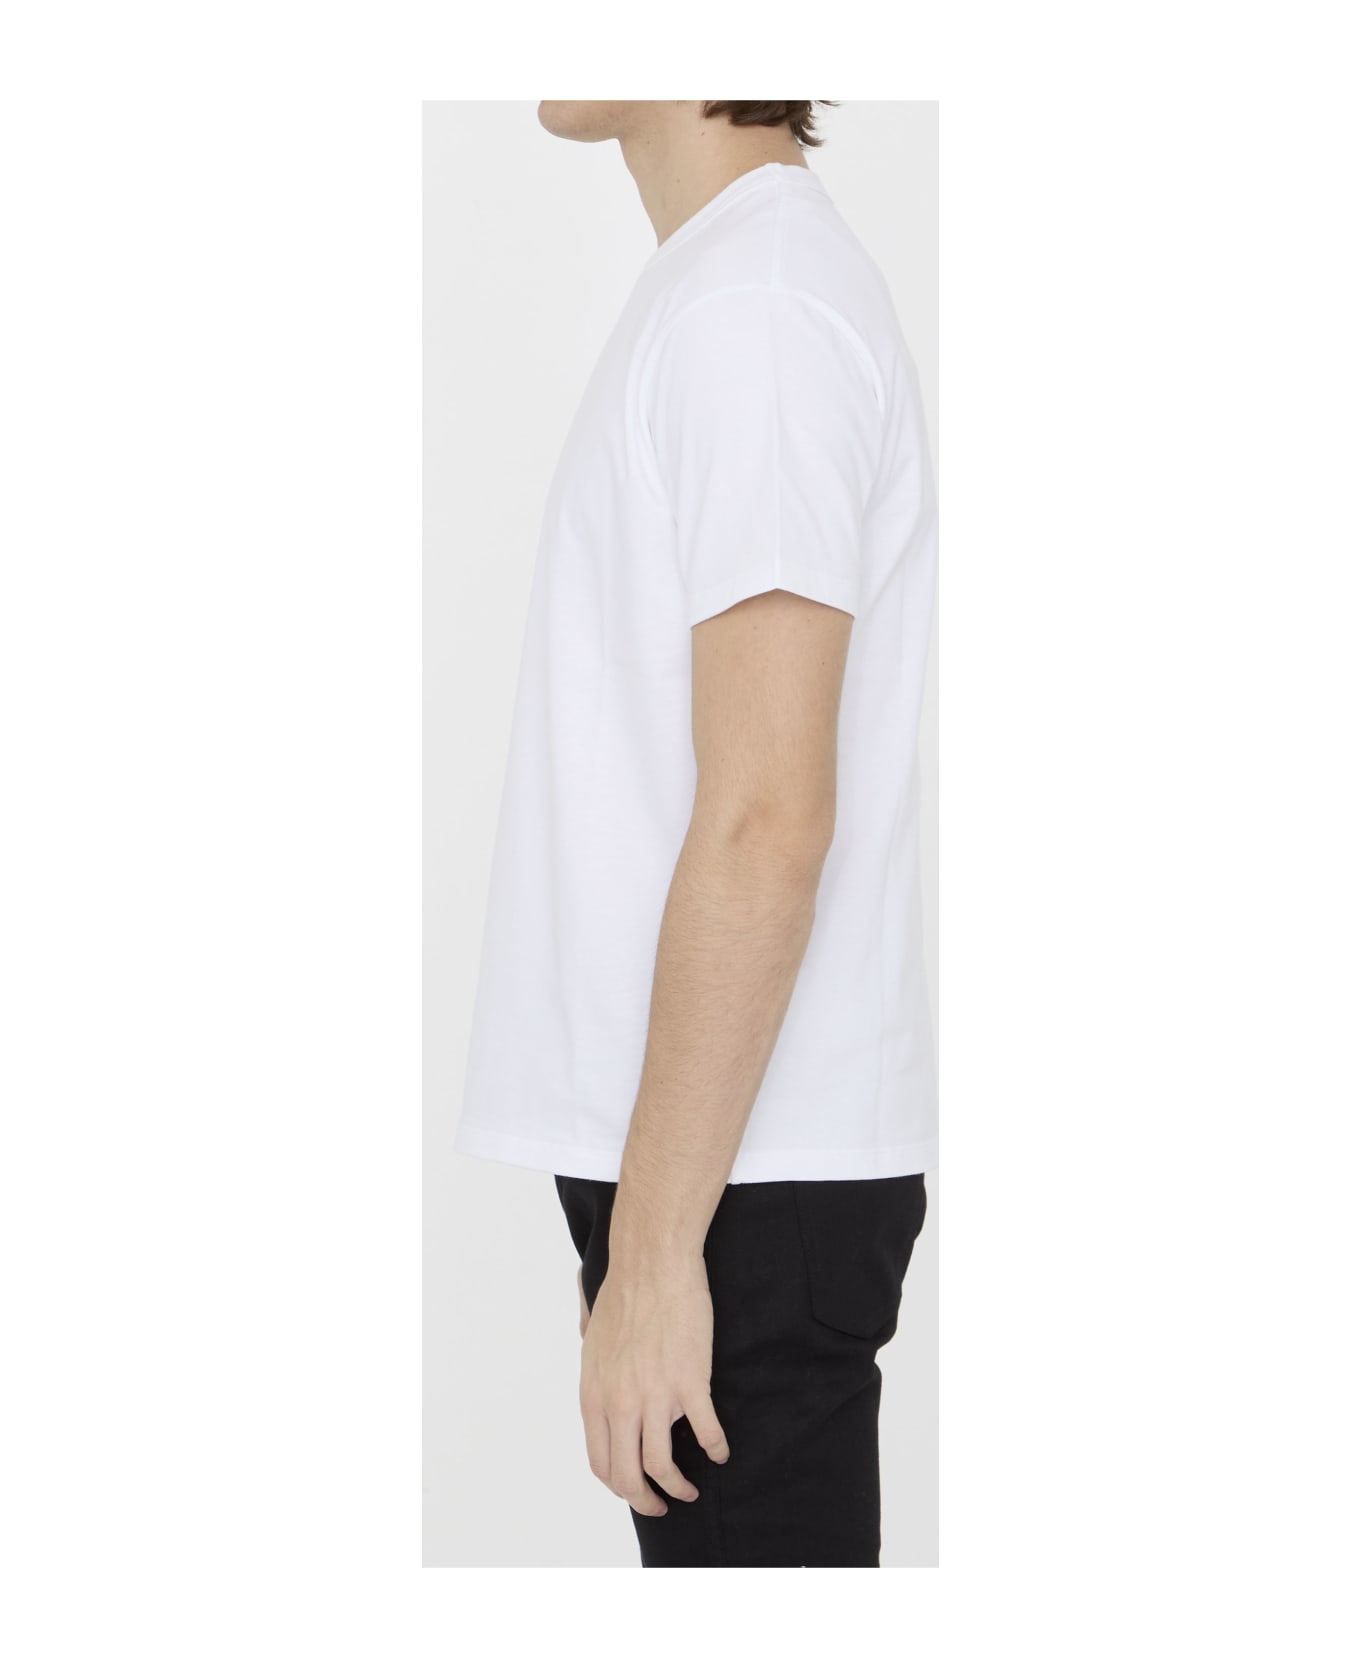 Valentino Garavani Cotton T-shirt - WHITE シャツ